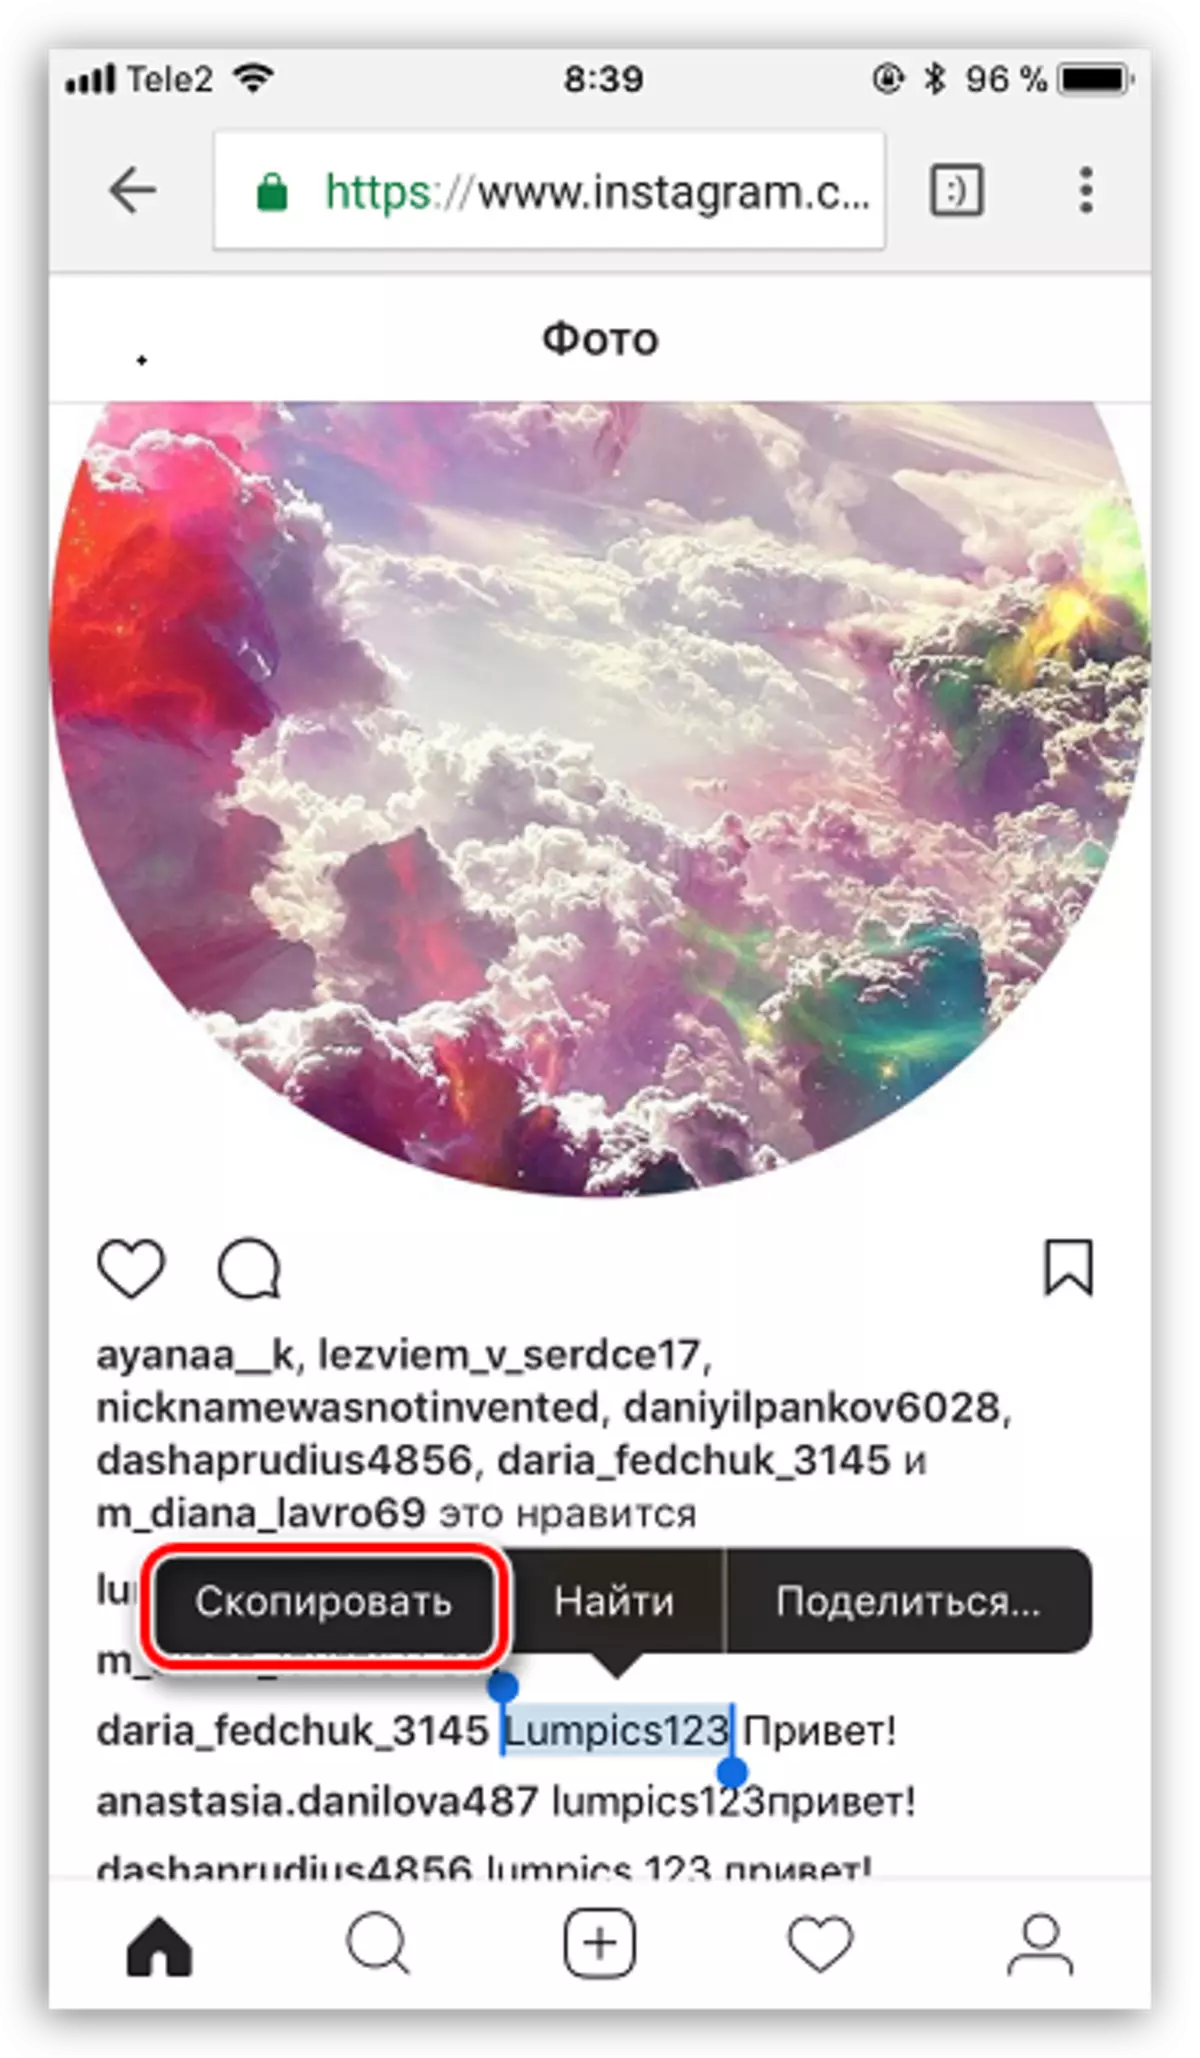 Kopírování textu z Instagramu na smartphone